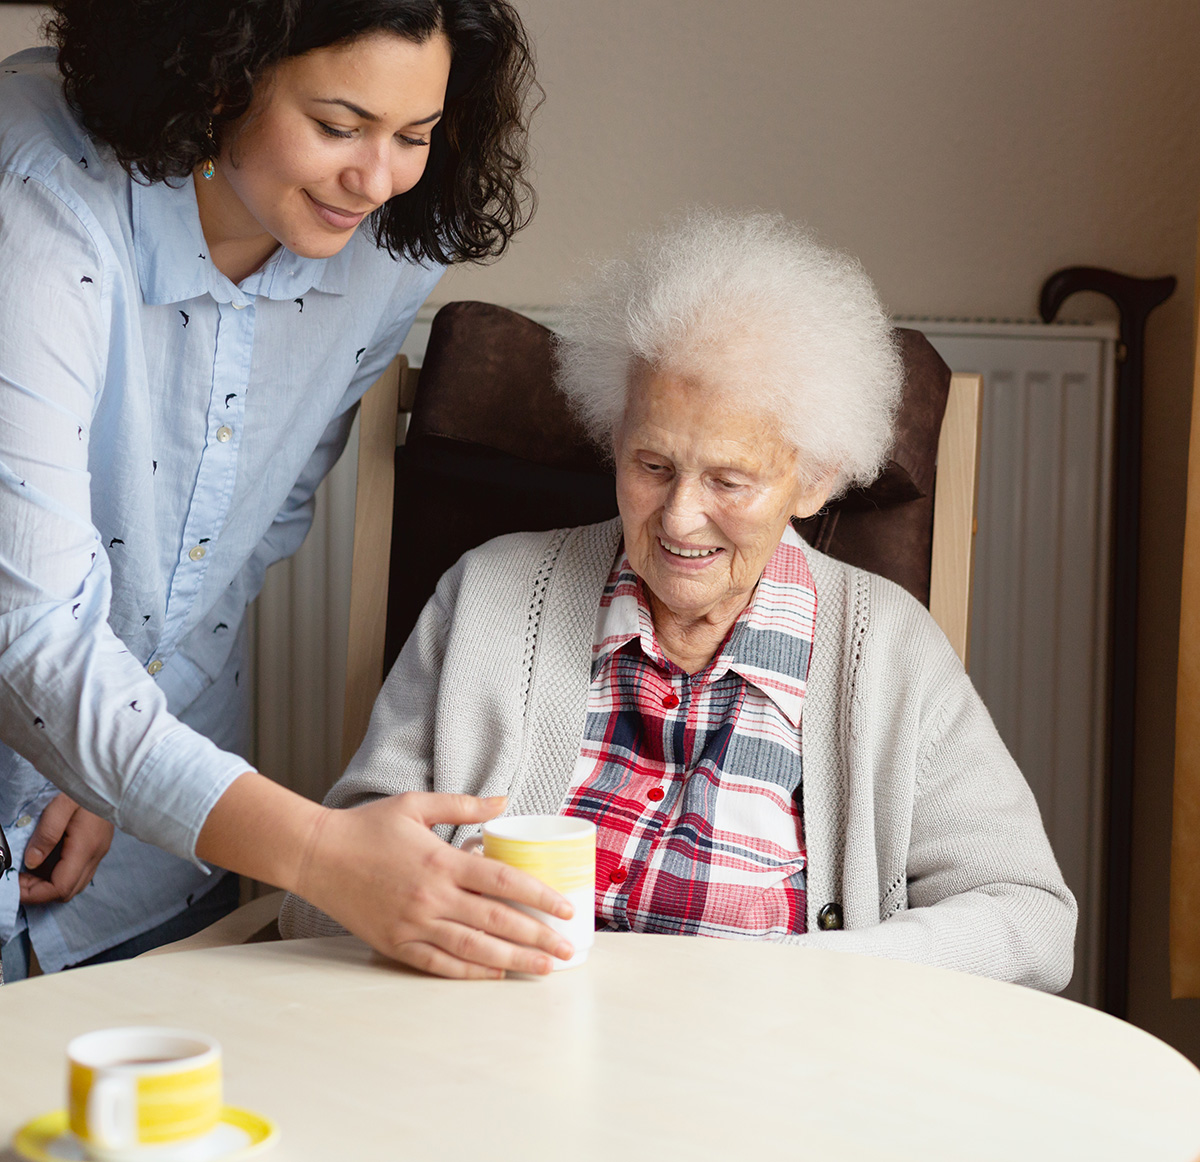 Caregiver handing an elderly woman a cup of tea